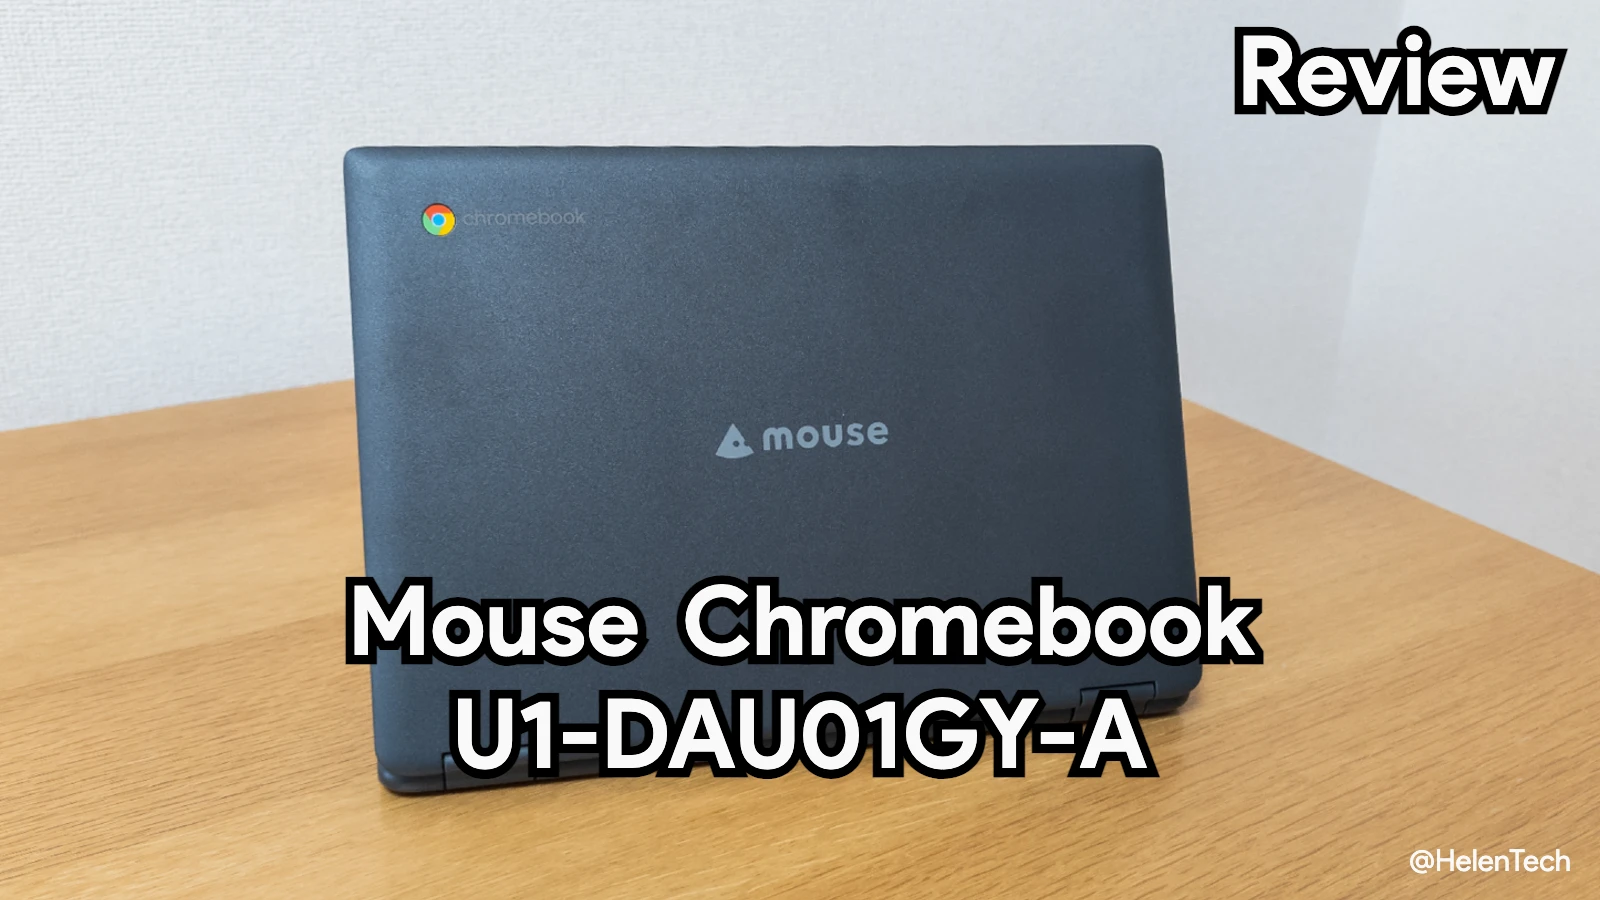 ｢マウスコンピューター Chromebook U1-DAU01GY-A｣を実機レビュー。バランス良くまとまってオススメ